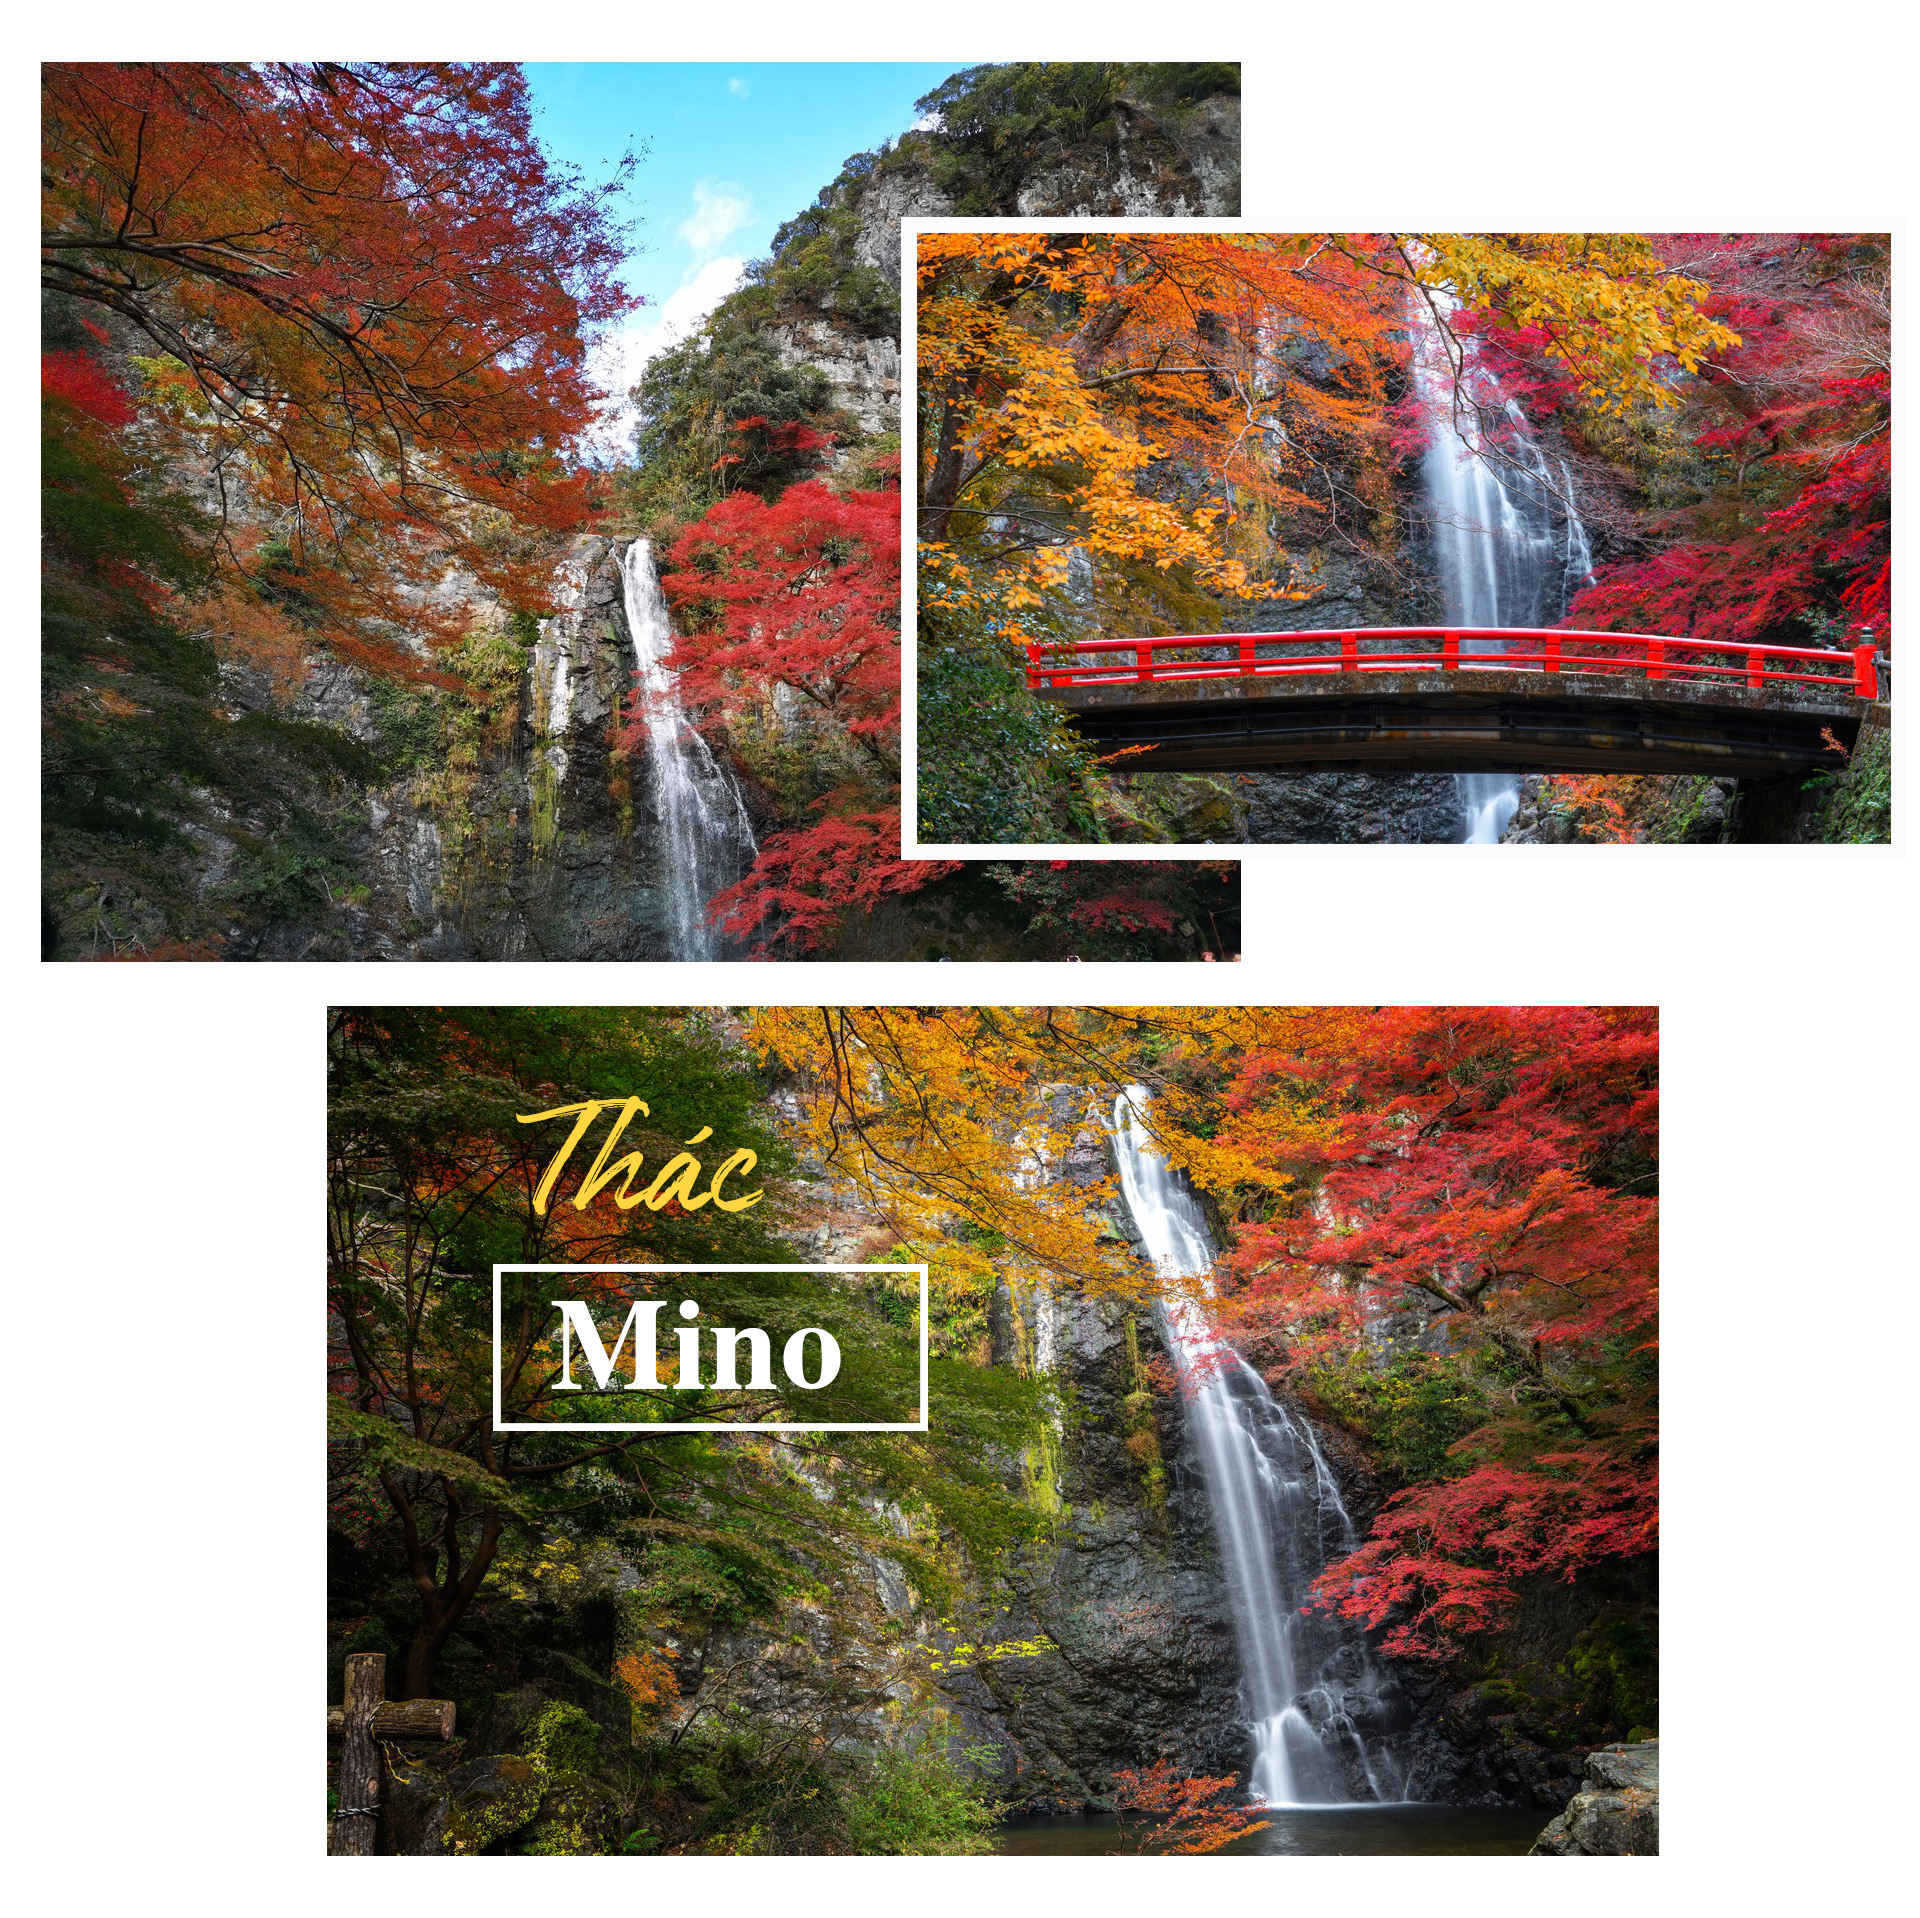 Chiêm ngưỡng những thác nước đẹp nhất Nhật Bản - 7